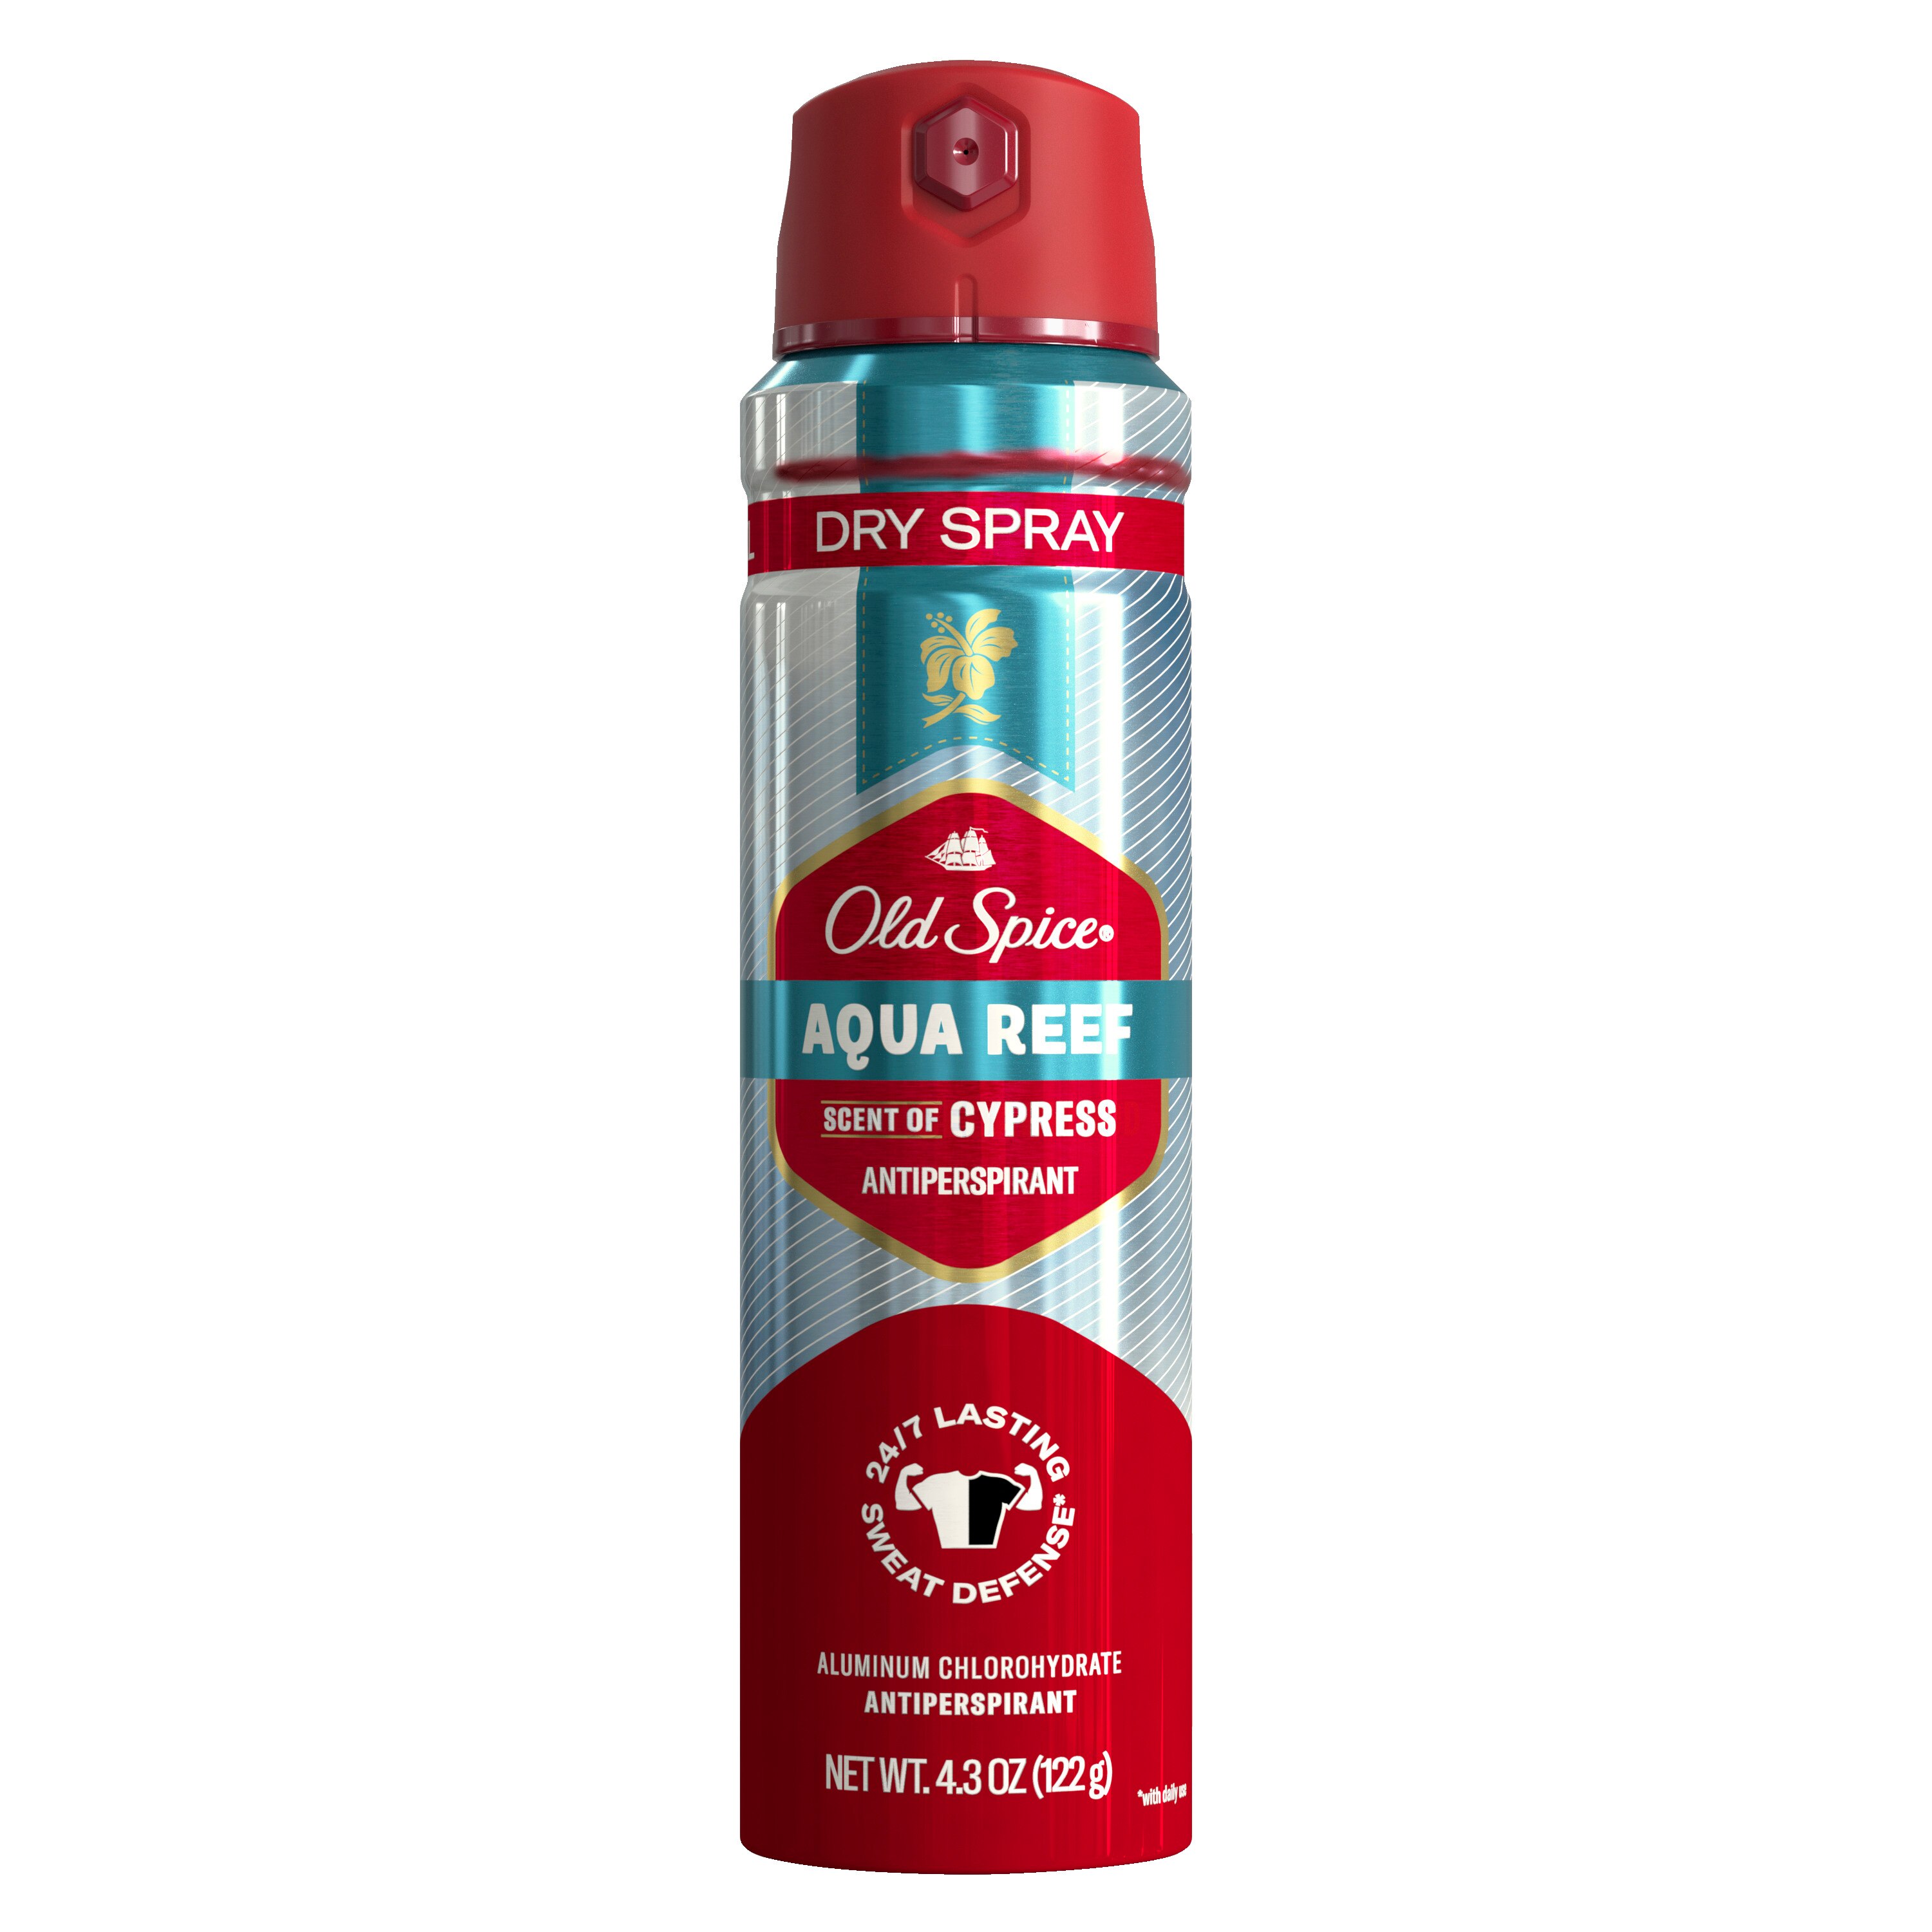 Old Spice Men's Antipespirant & Deodorant Invisible Dry Spray, Fast Break, 4.3 OZ